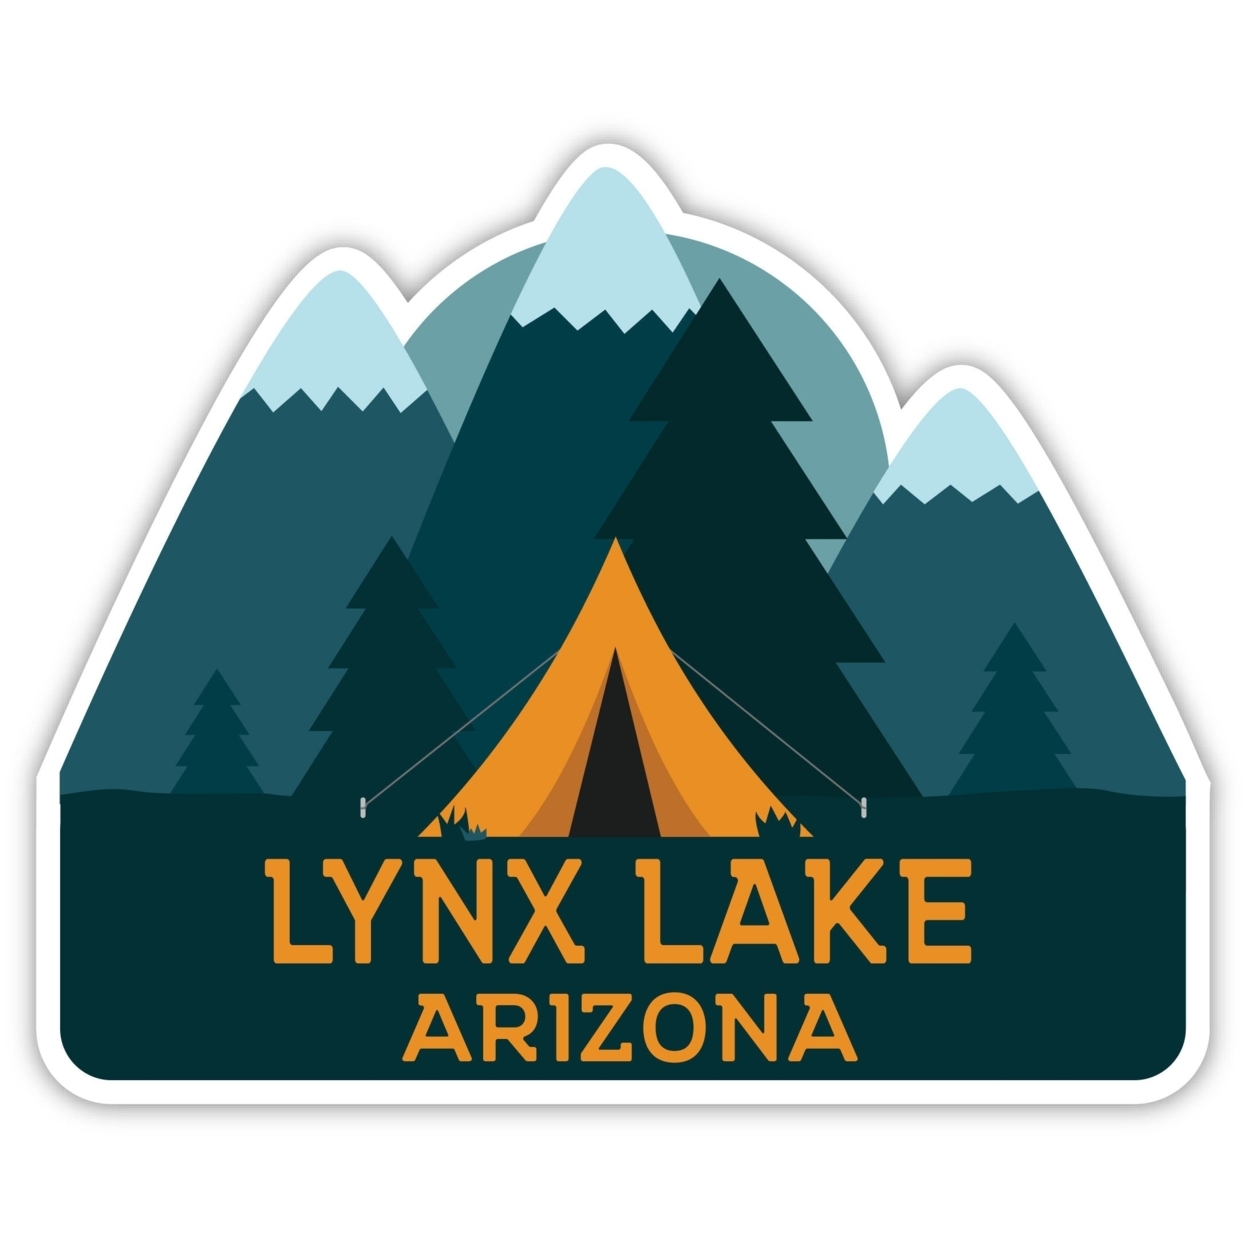 Lynx Lake Arizona Souvenir Decorative Stickers (Choose Theme And Size) - 2-Inch, Bear